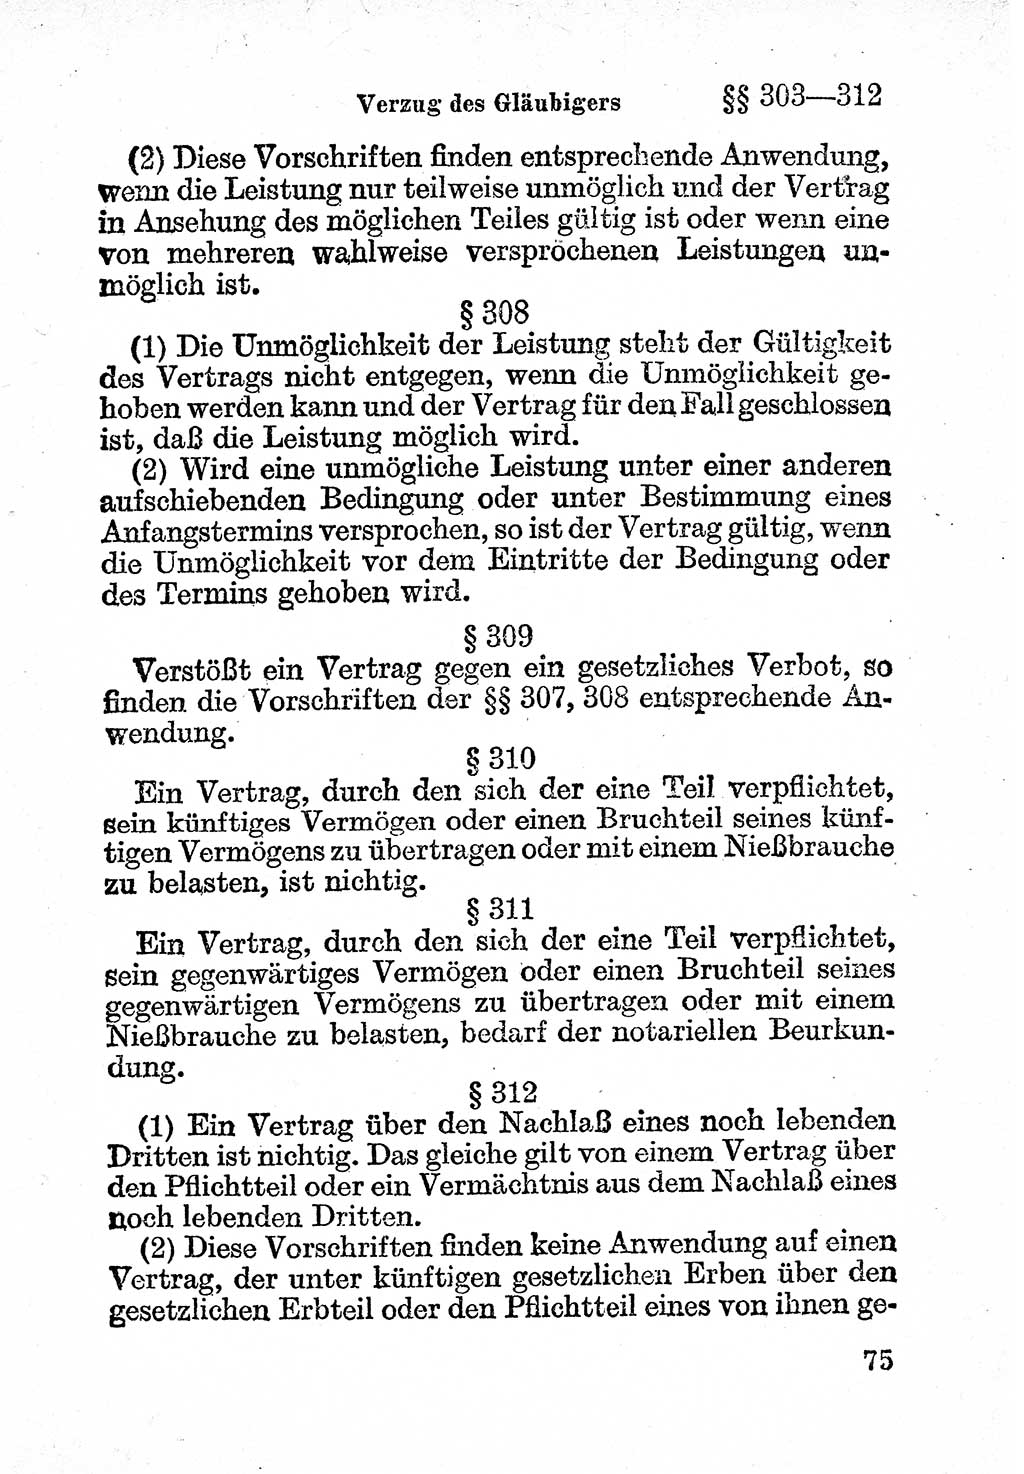 Bürgerliches Gesetzbuch (BGB) nebst wichtigen Nebengesetzen [Deutsche Demokratische Republik (DDR)] 1956, Seite 75 (BGB Nebenges. DDR 1956, S. 75)